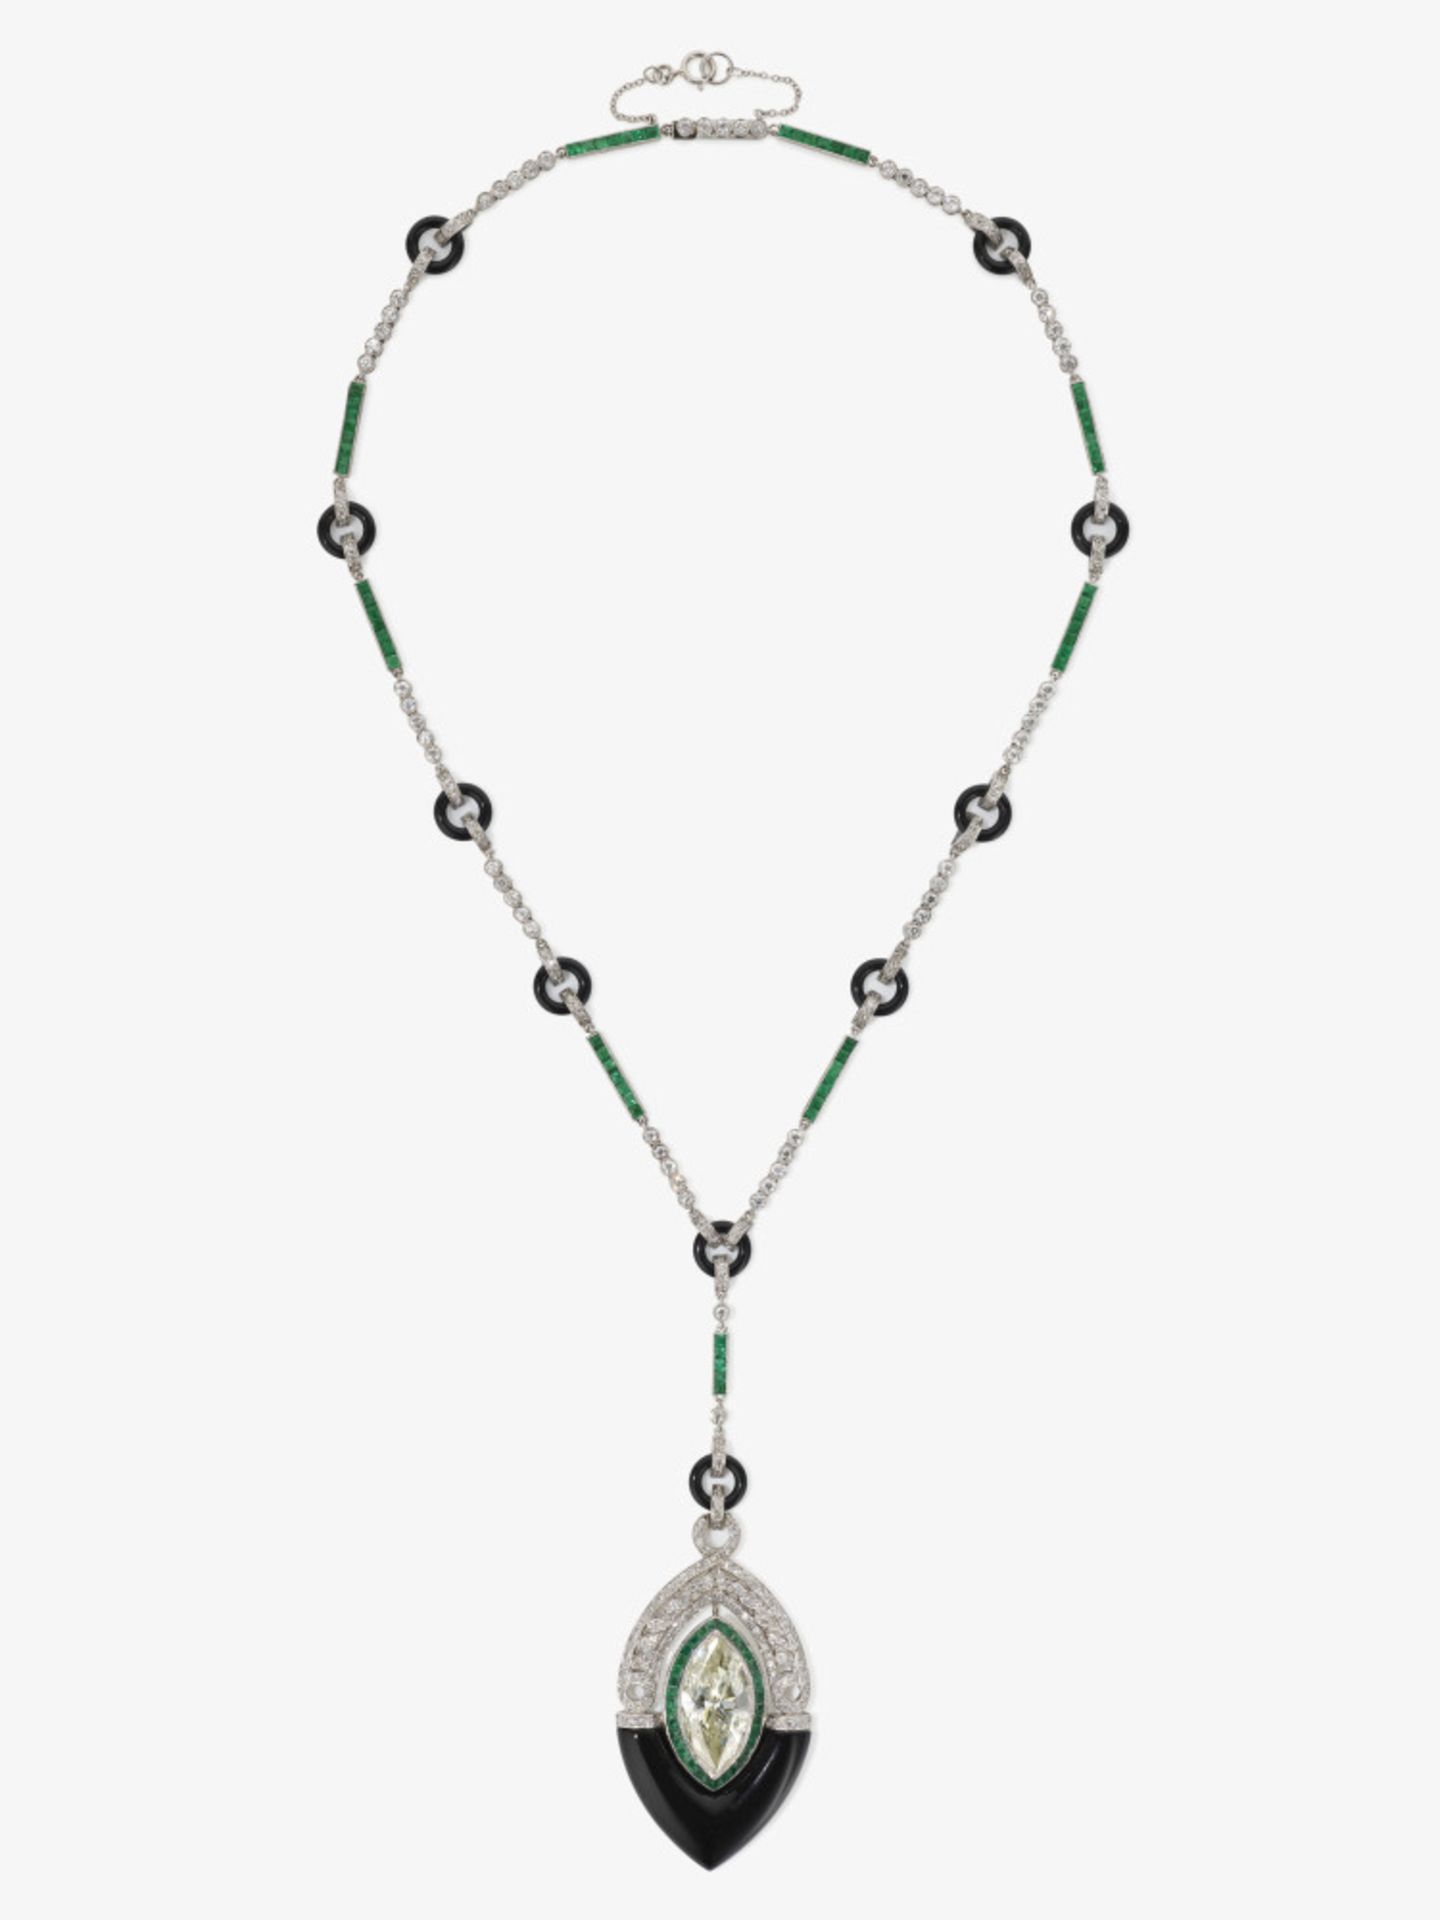 Historisches Collier verziert mit einem Diamanten im Marquise, Onxy-Elemete, Smaragde und Diamanten - Bild 6 aus 8